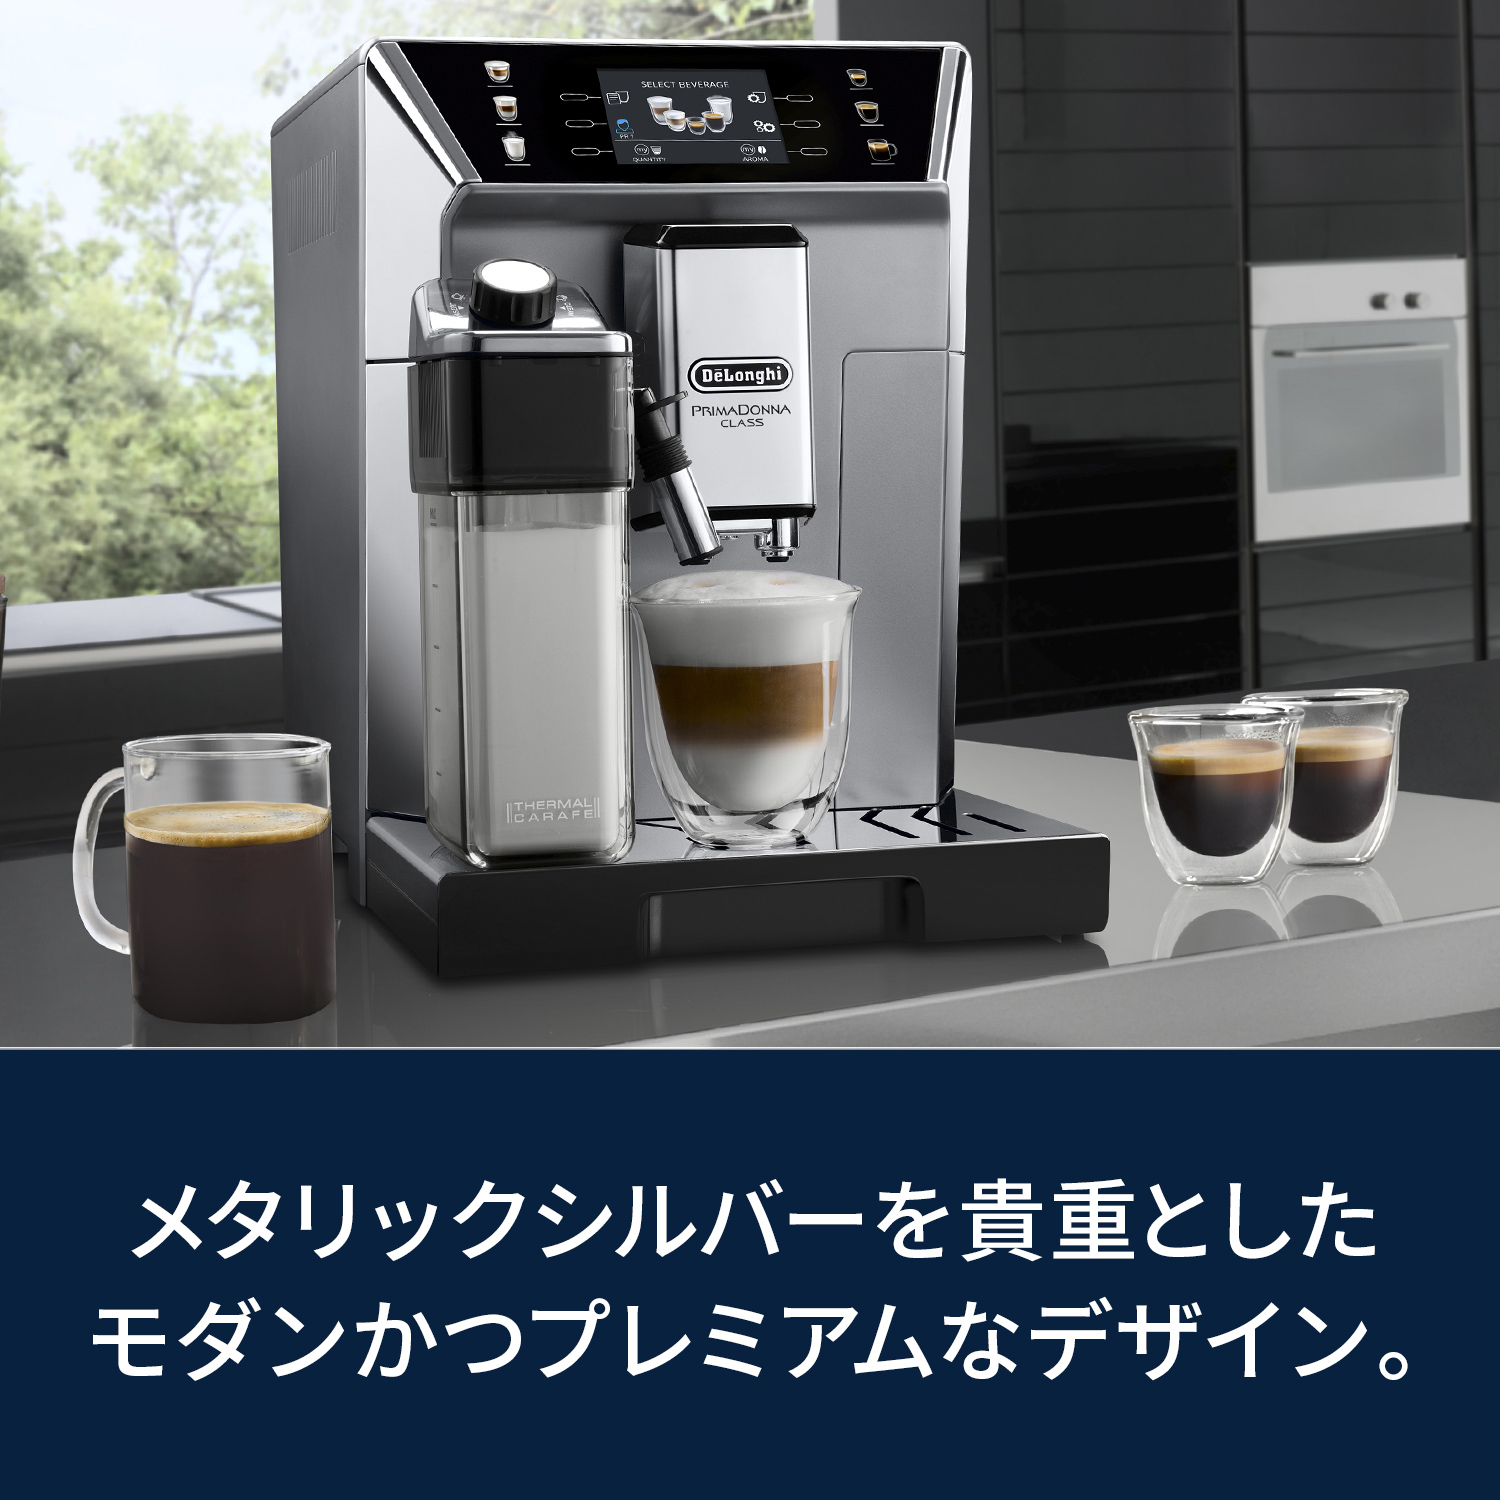 デロンギ プリマドンナクラス 全自動コーヒーマシン [ECAM55085MS